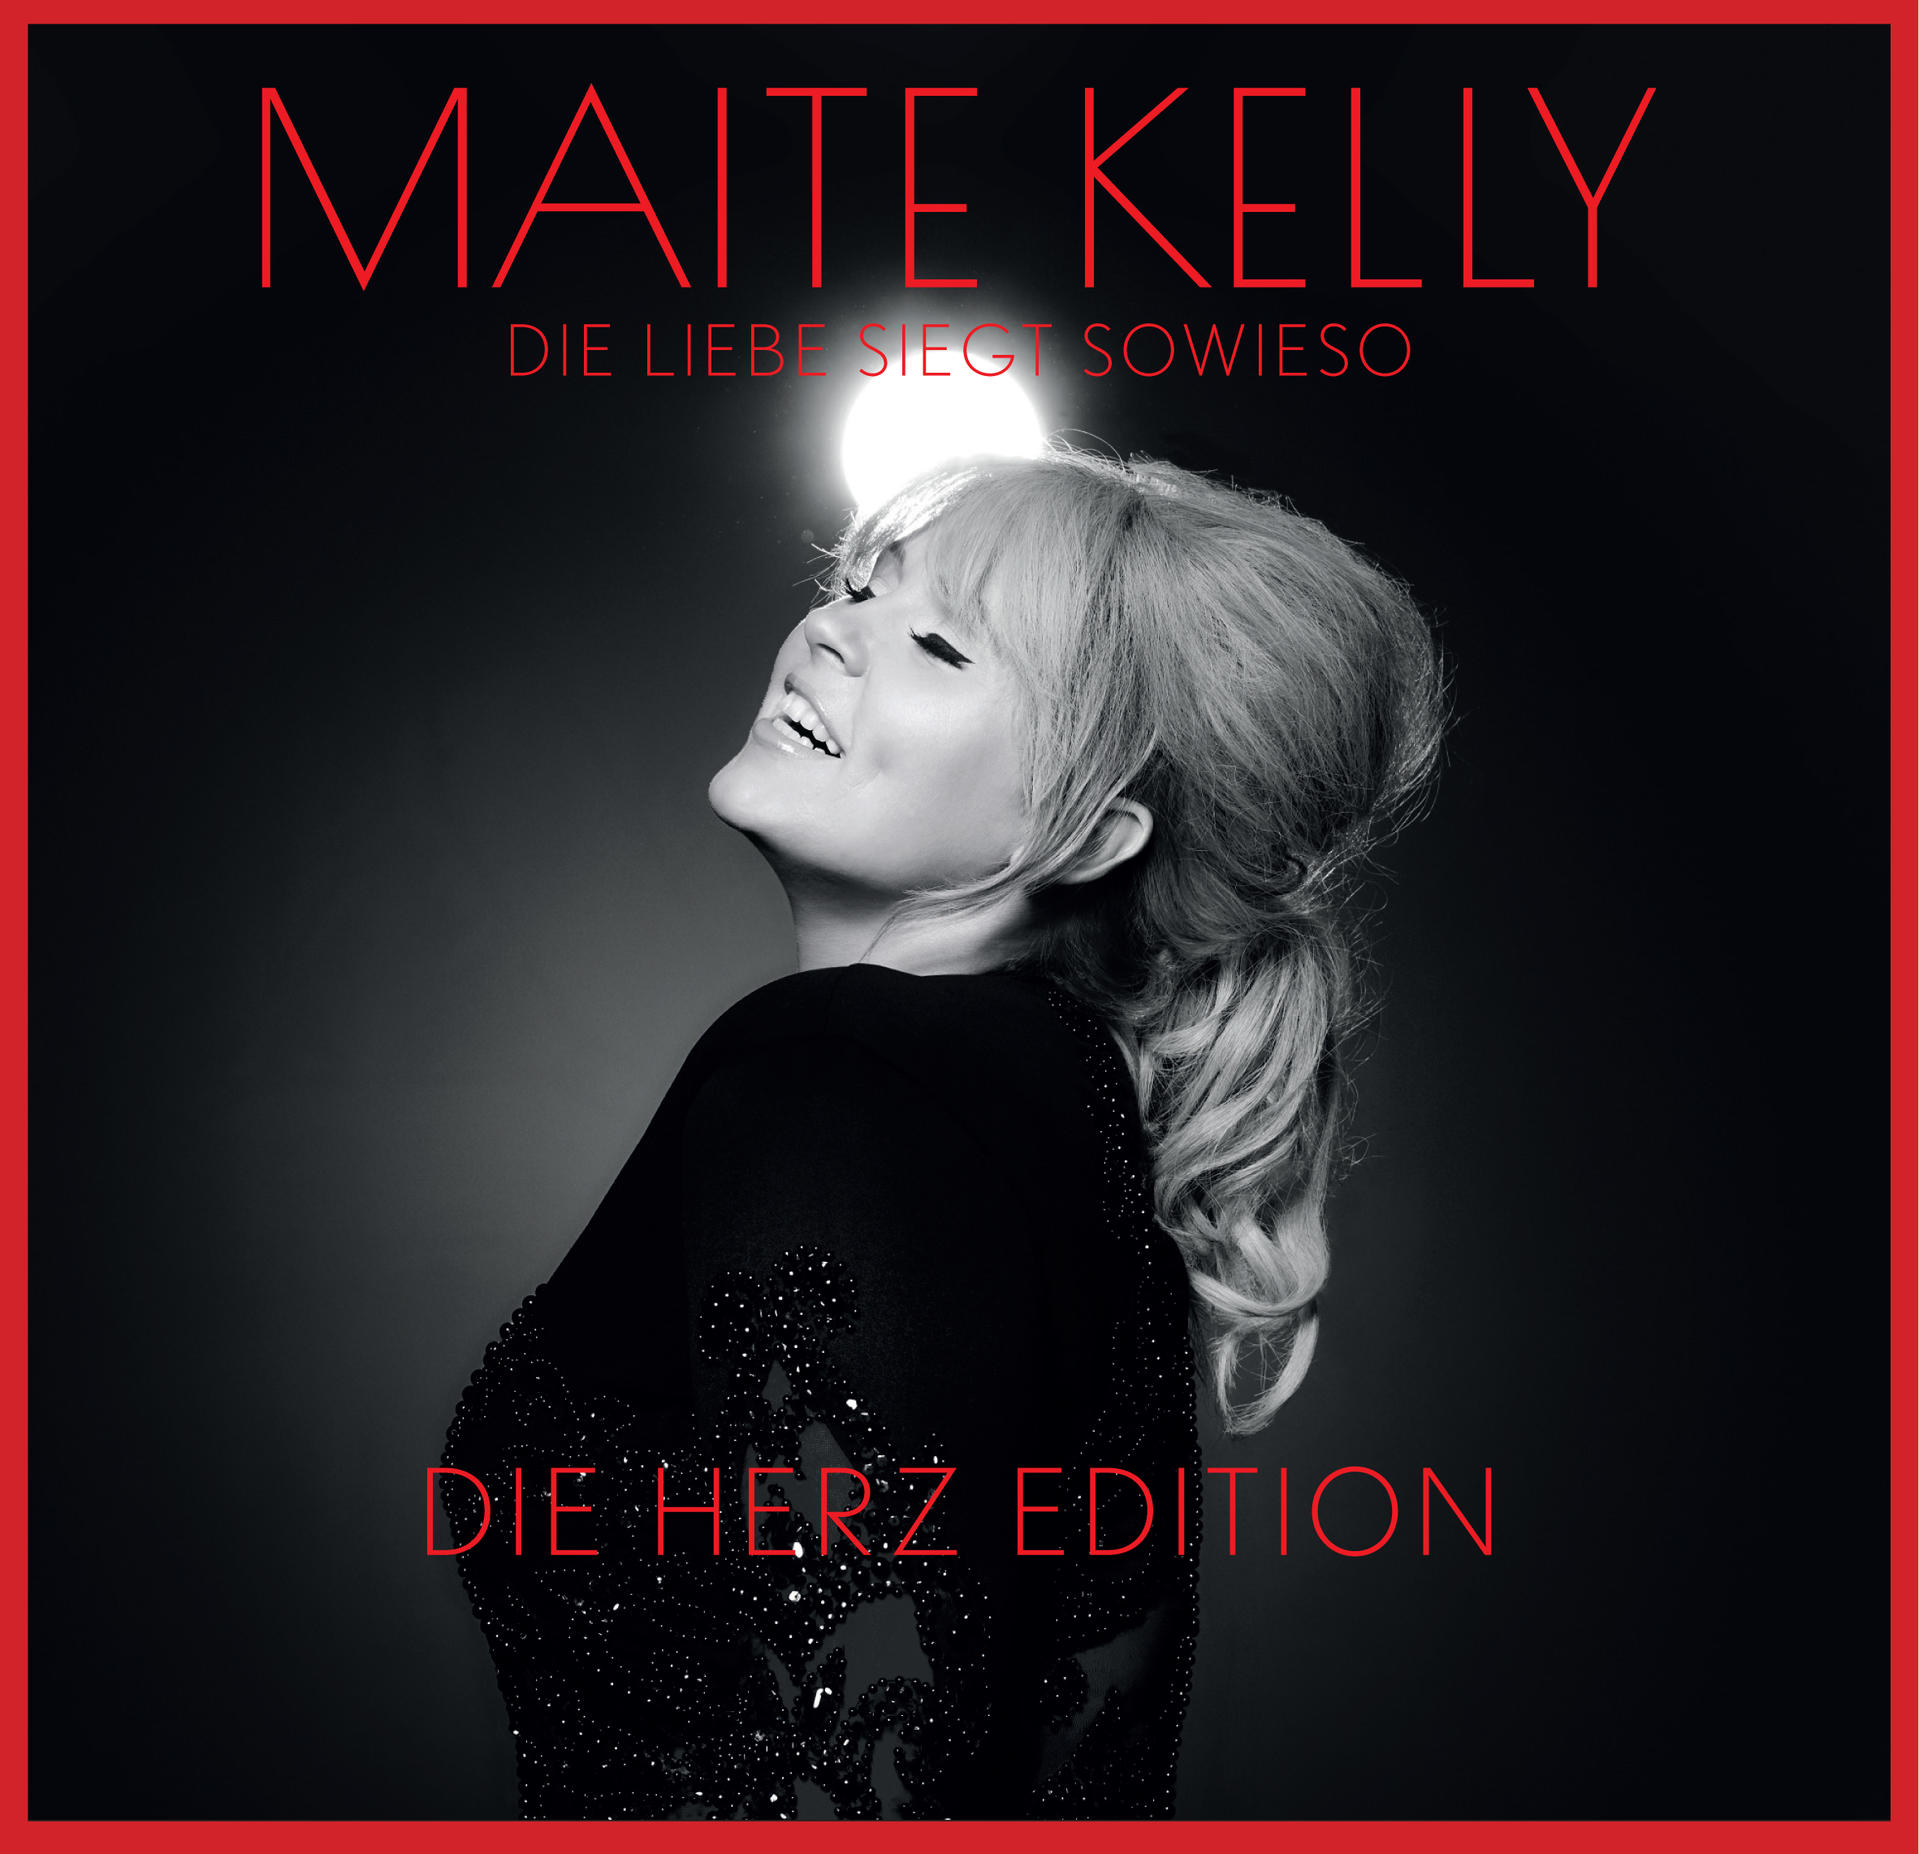 - - Edition) sowieso Herz Maite Die Liebe (CD) siegt (Die Kelly